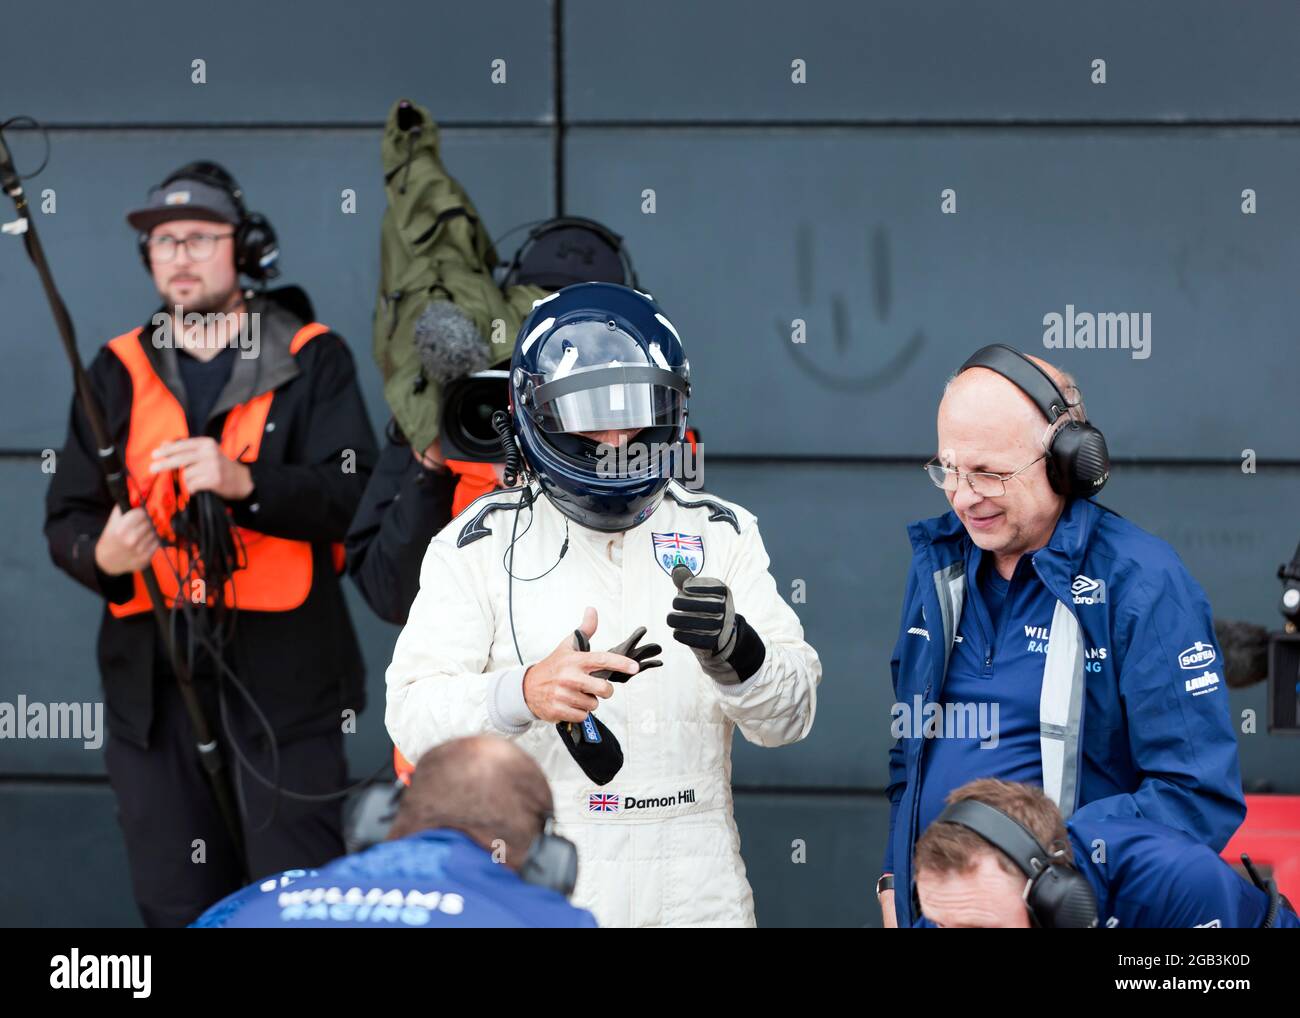 Damon Hill juste après sa sortie du poste de pilotage de sa voiture de Formule 1 FW18, gagnante du Championnat du monde, entourée de membres de l'équipe Williams Racing Heritage, au Silverstone Classic 2021 Banque D'Images